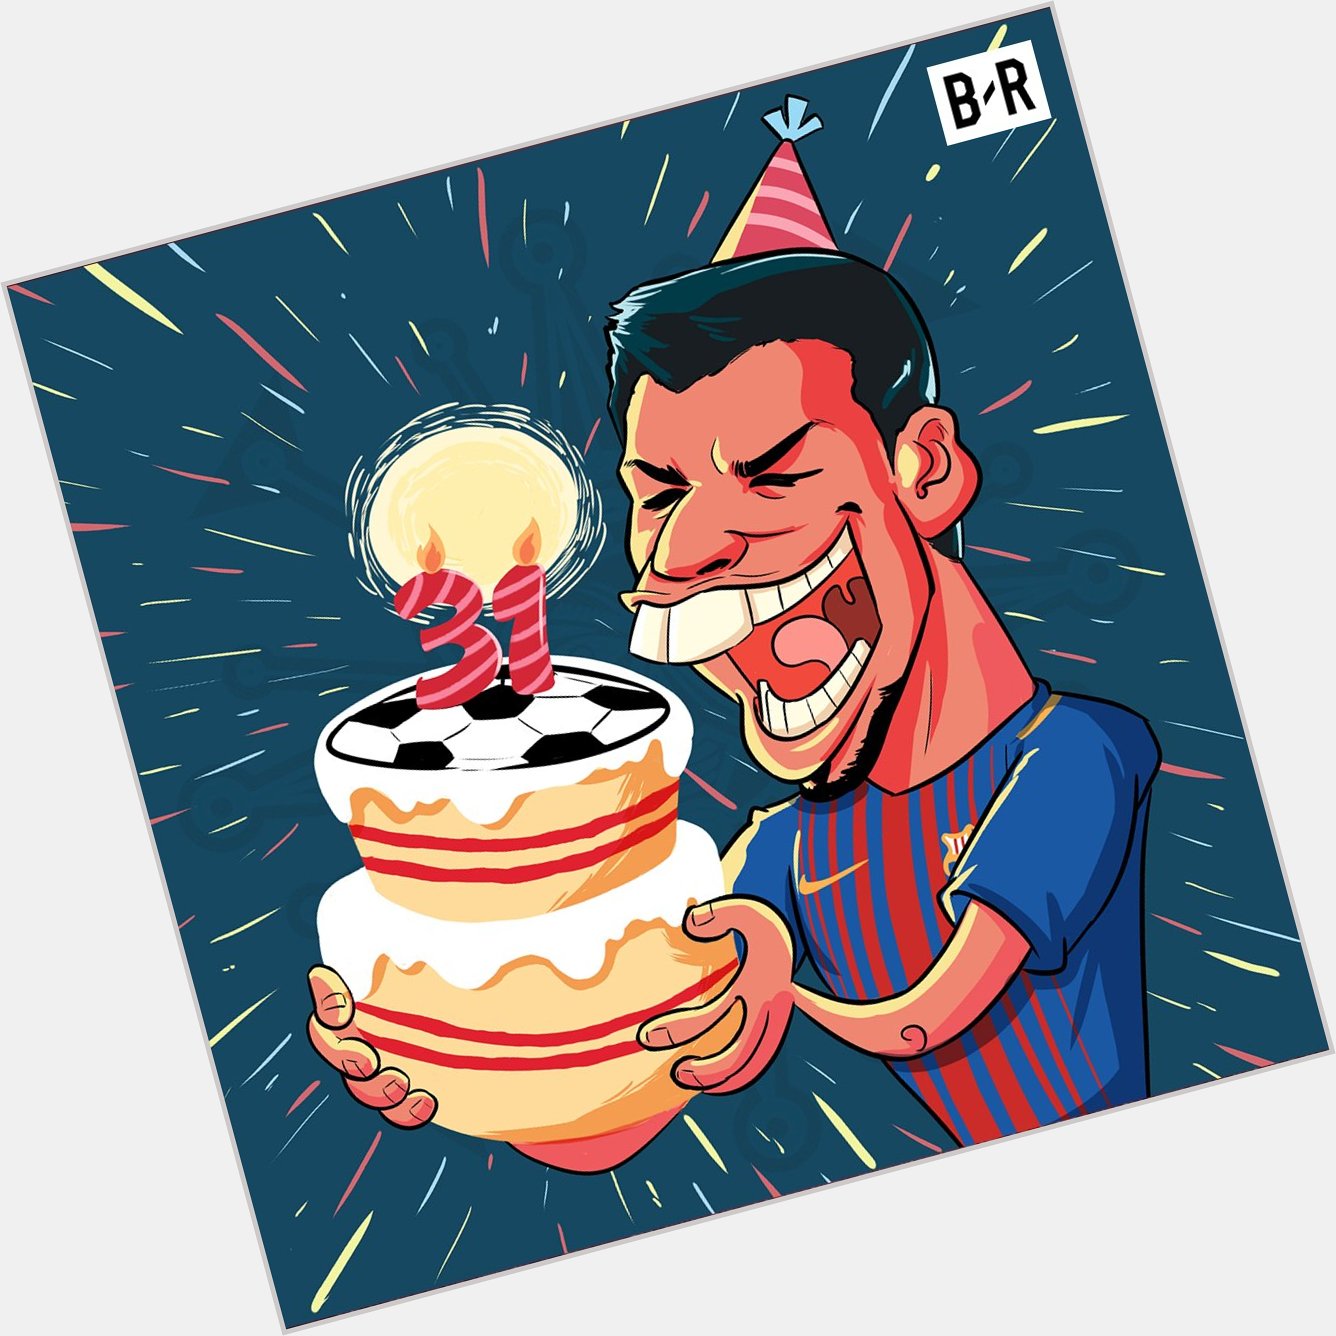 Happy birthday, Luis Suarez! 